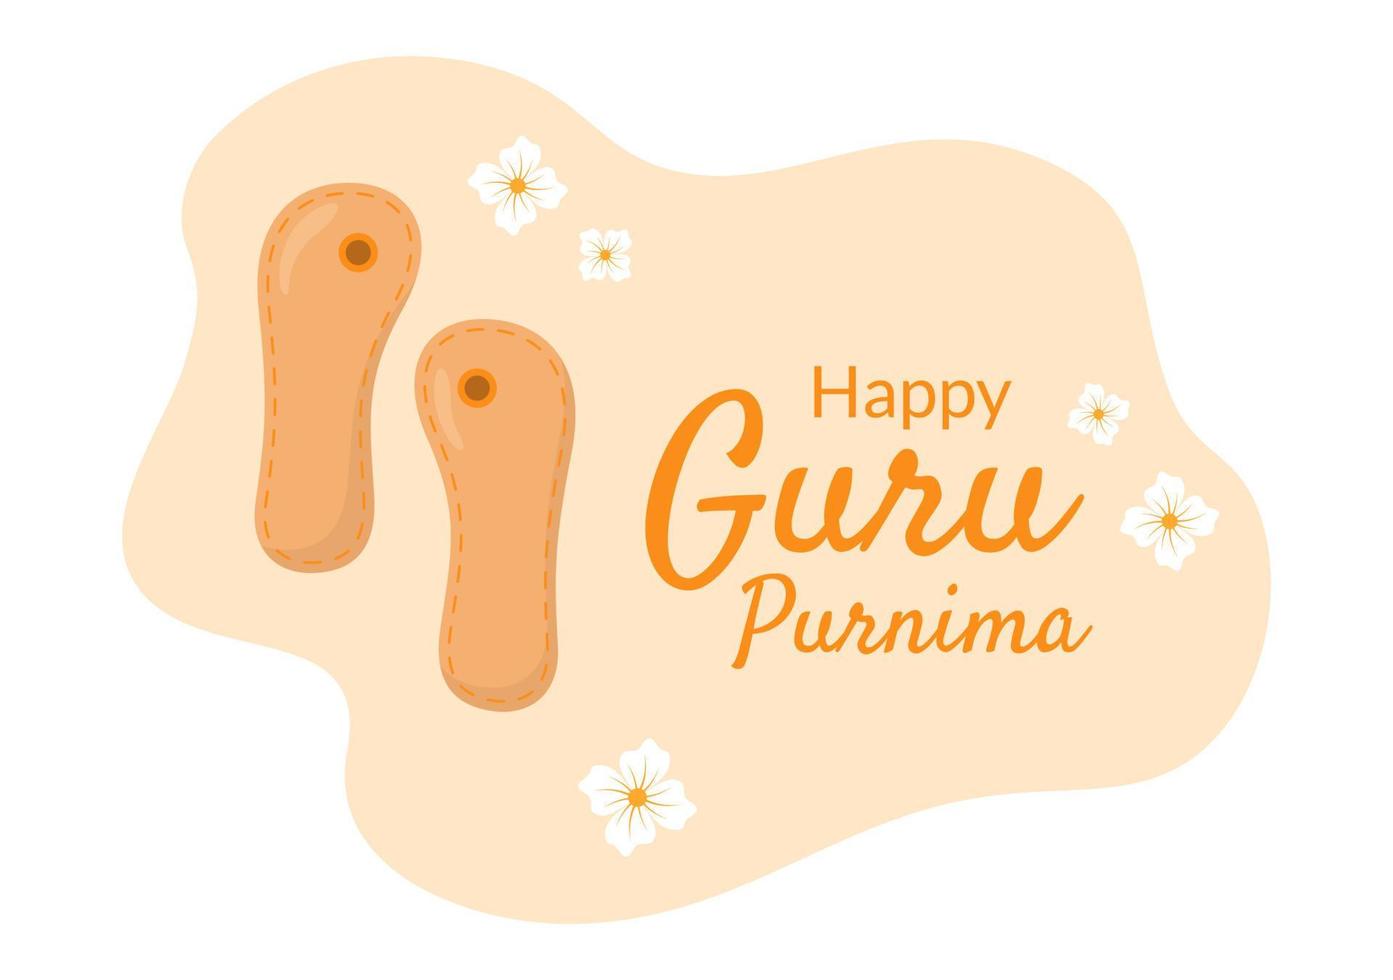 gelukkige goeroe purnima van het Indiase festival voor spirituele en academische leraren in een platte cartoonbloemachtergrondillustratie vector